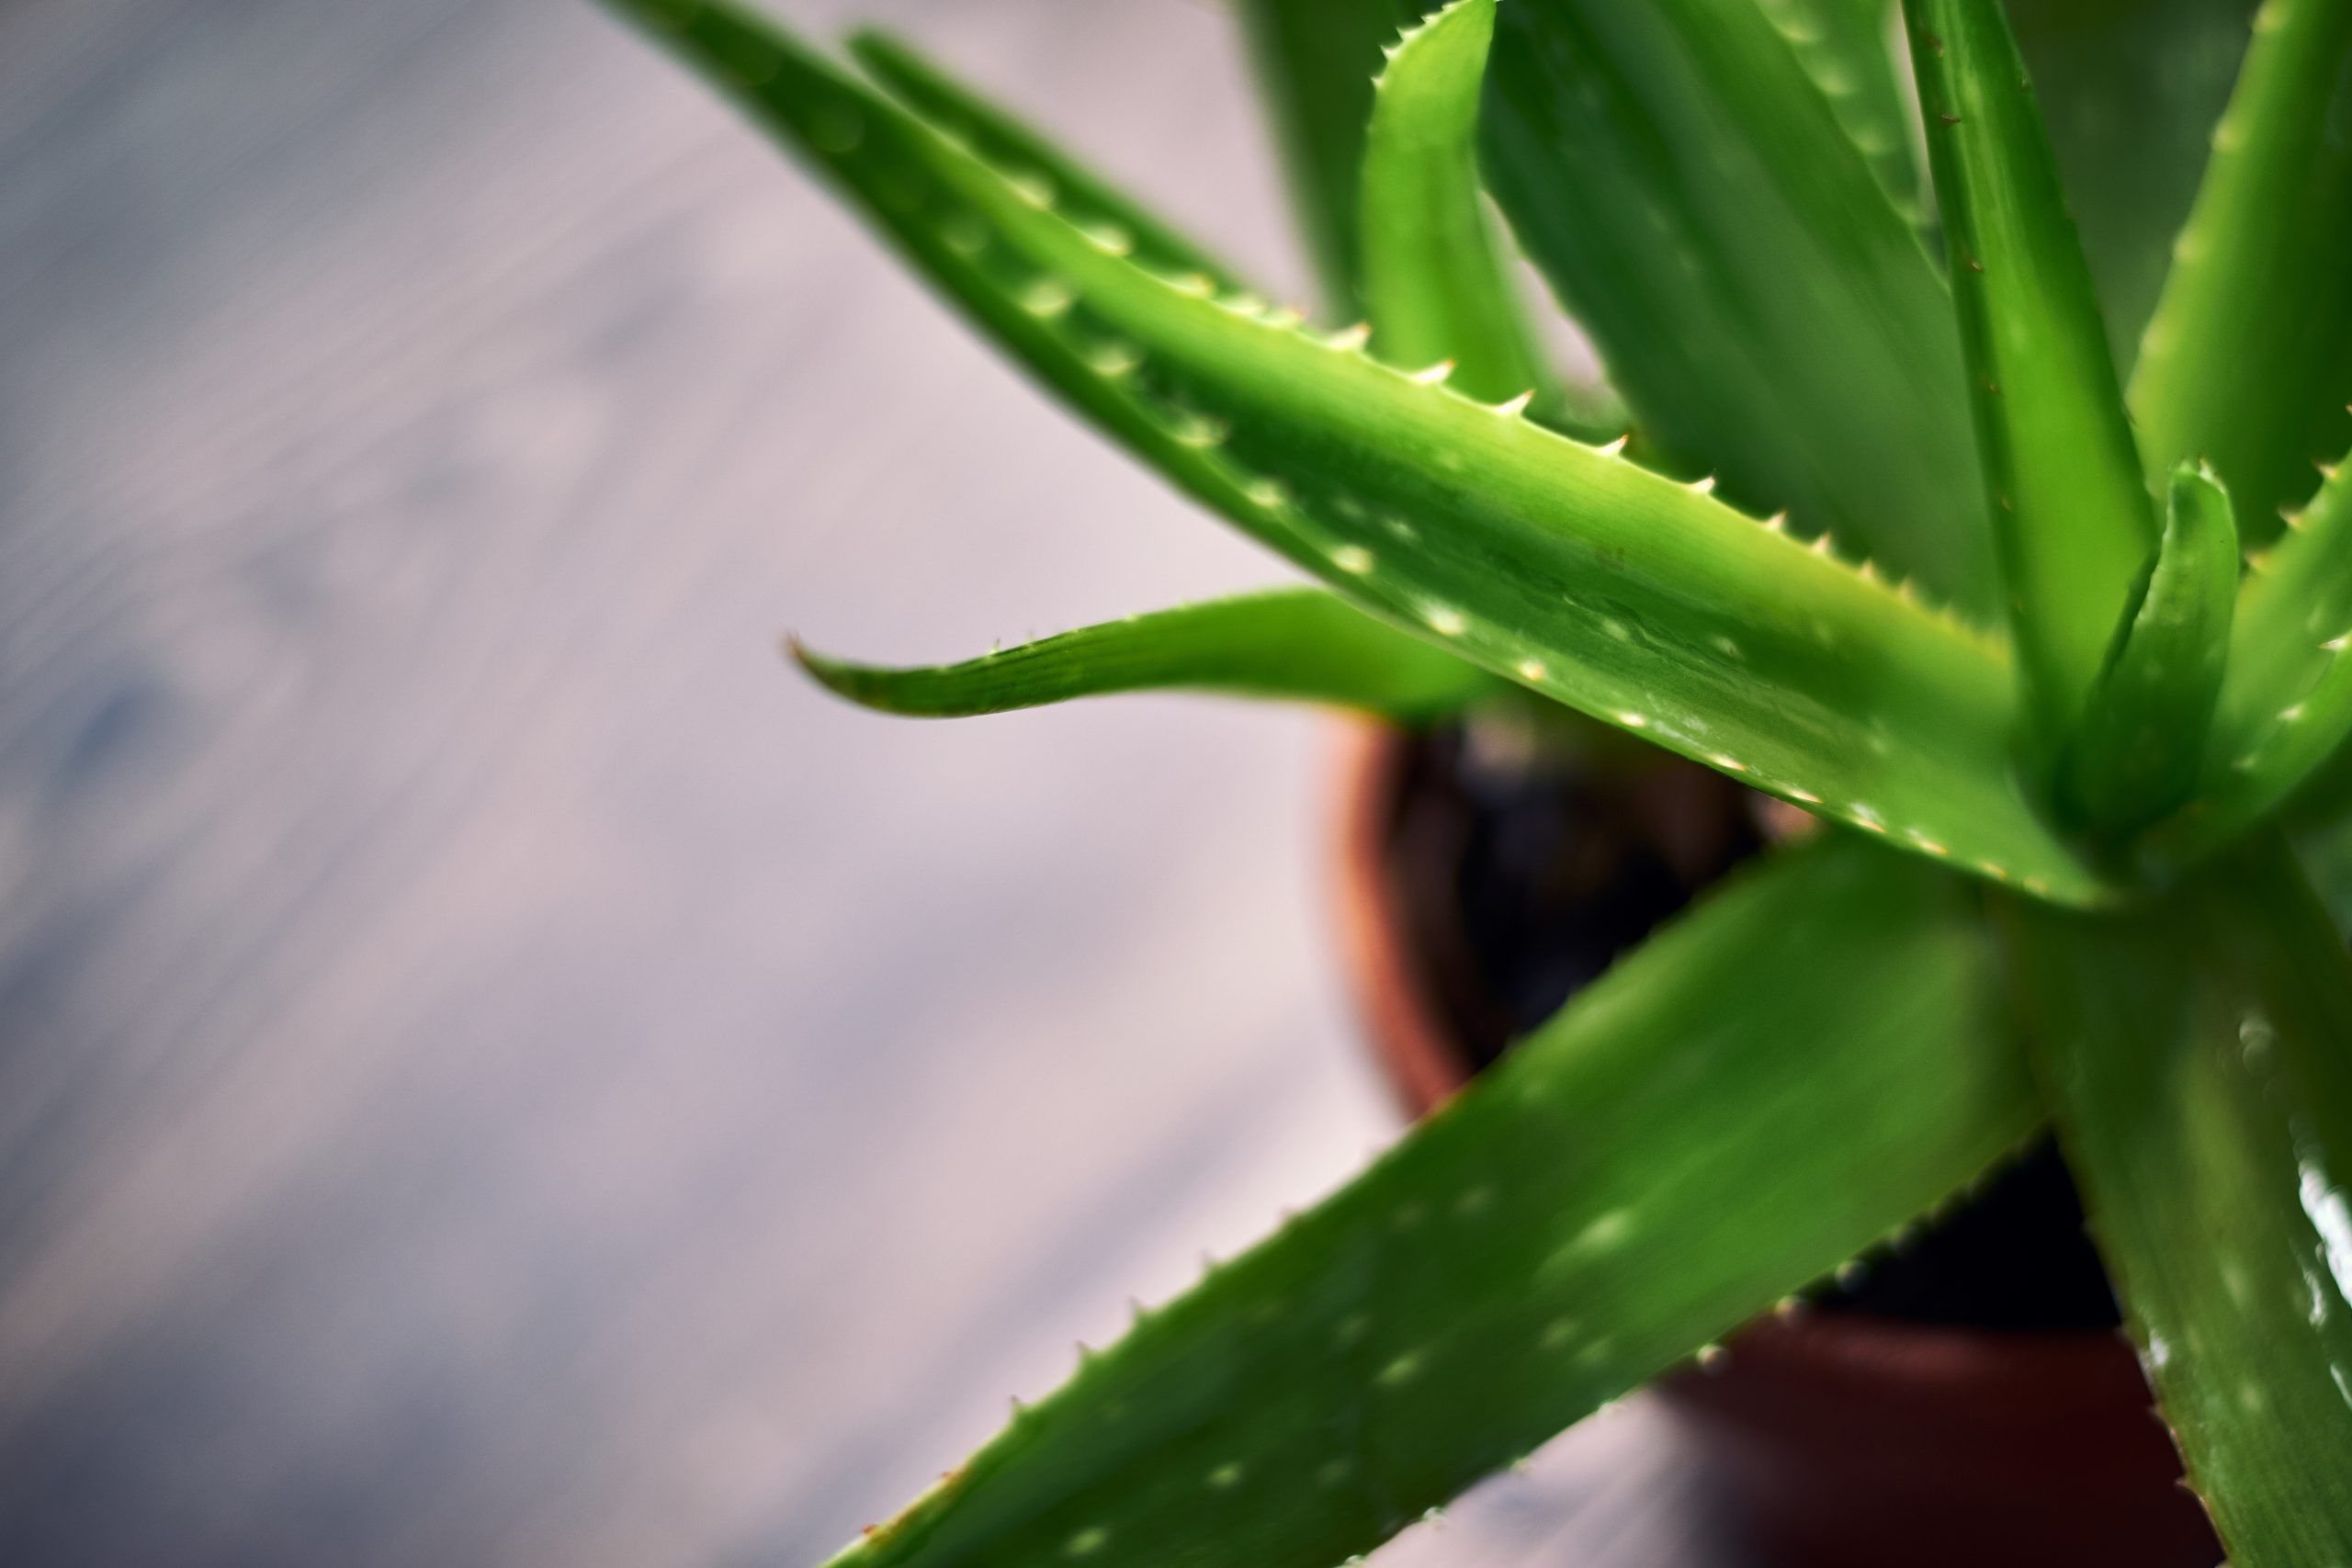 O Aloe Vera é uma planta que contém saponinas e pode causar vômitos, diarreia e dores de estômago quando ingerido.